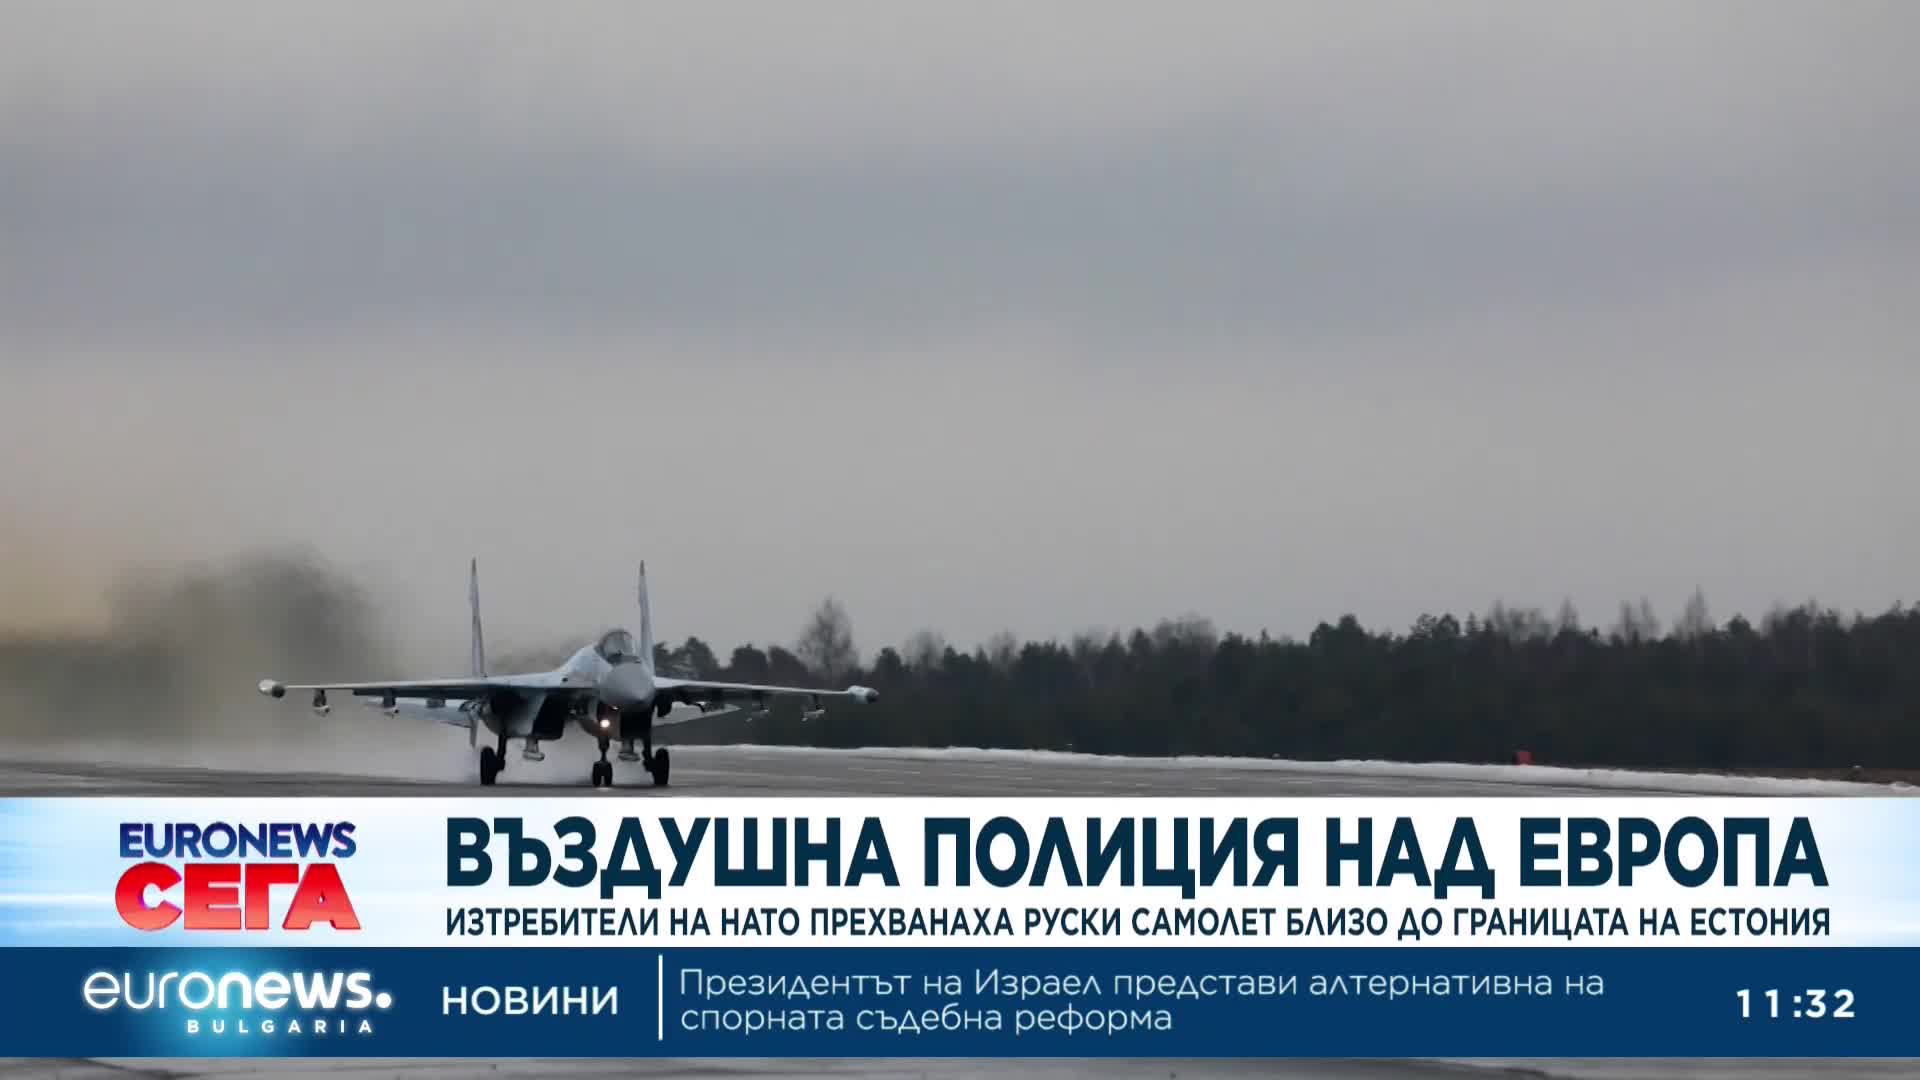 Британски и германски изтребители прихванаха руски самолет край Естония